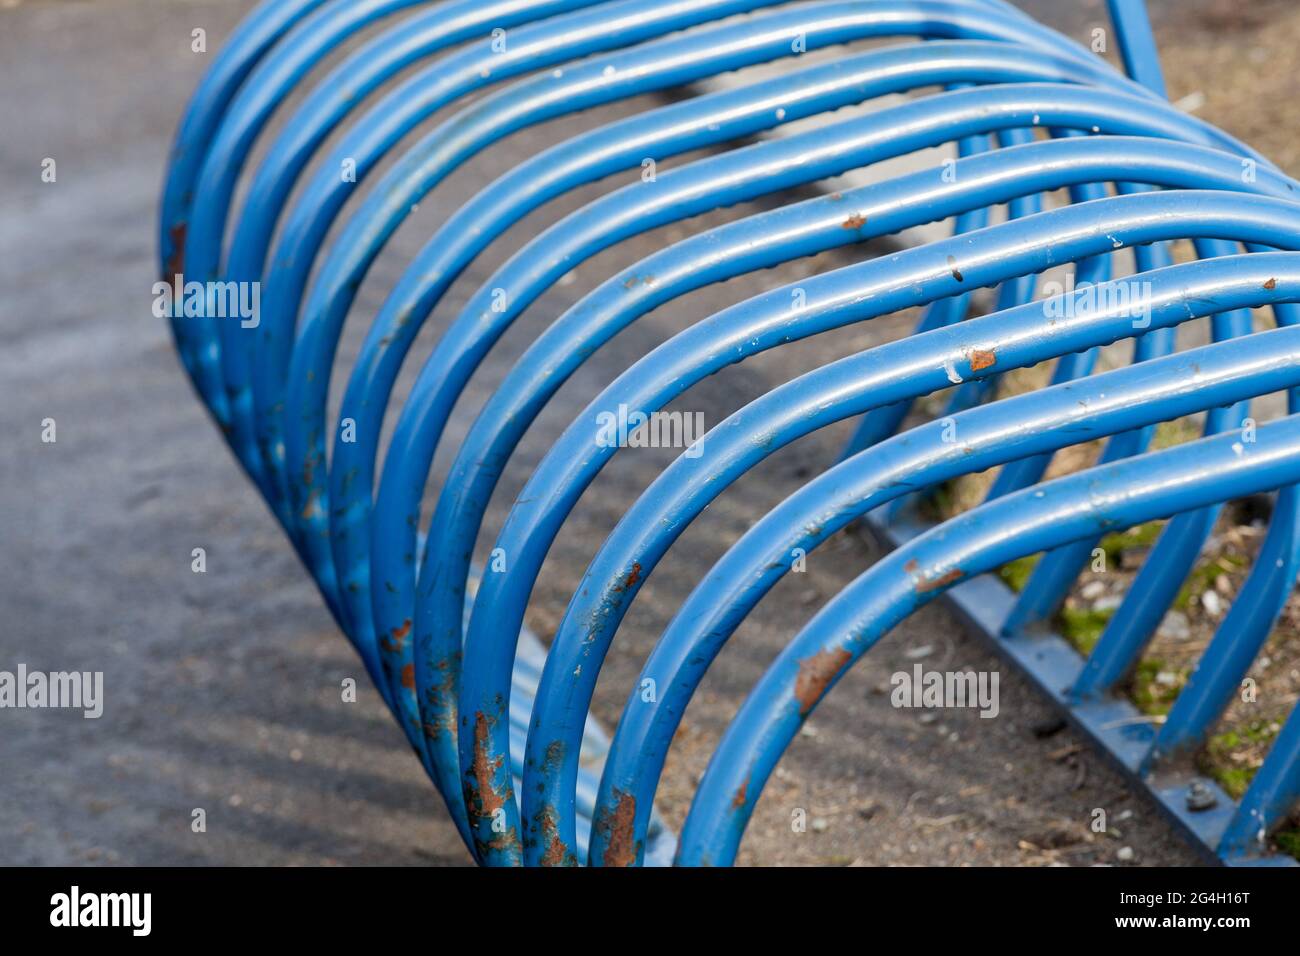 Parcheggio per biciclette in tubi di acciaio blu curvi, fondo astratto di trasporto urbano Foto Stock